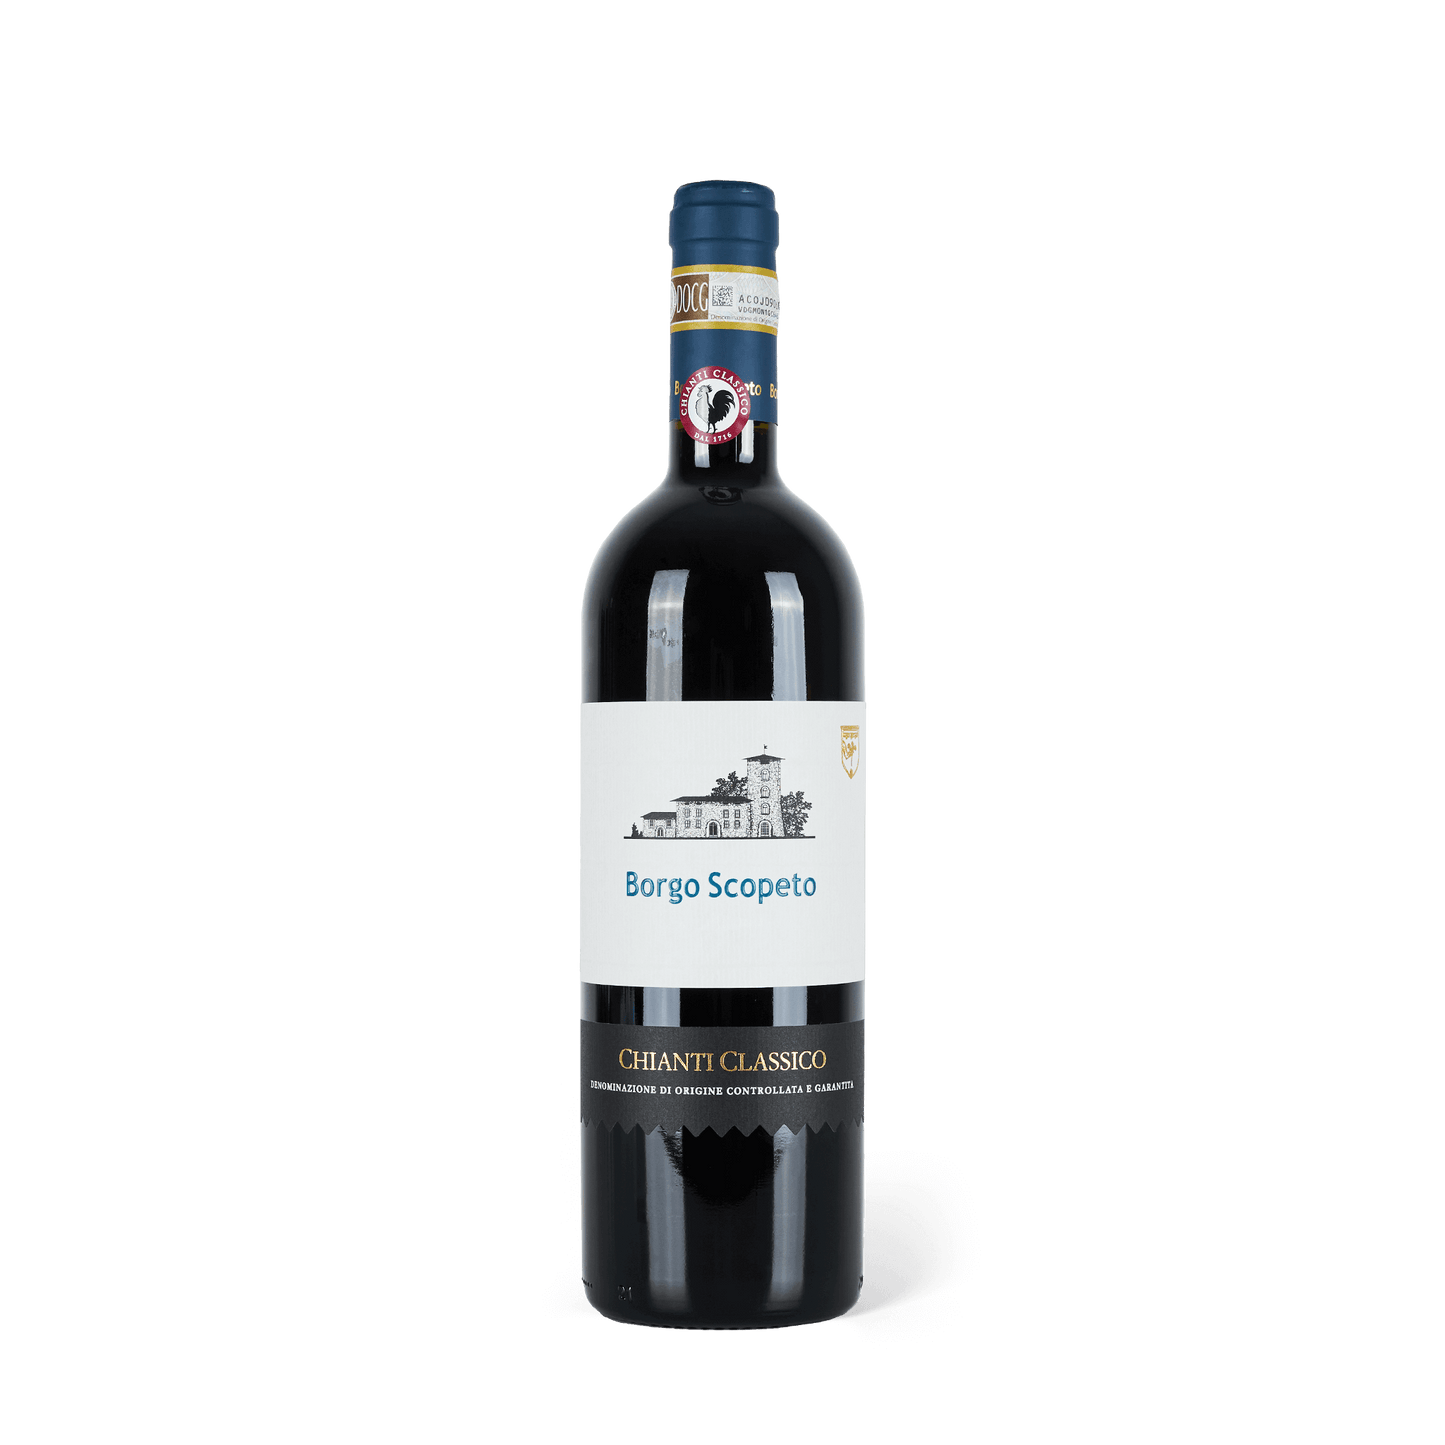 Rotweinflasche stehend, blaue Banderole, weißes Etikett mit blauer Aufschrift: " Borgo Scopeto, Chianti Classico"